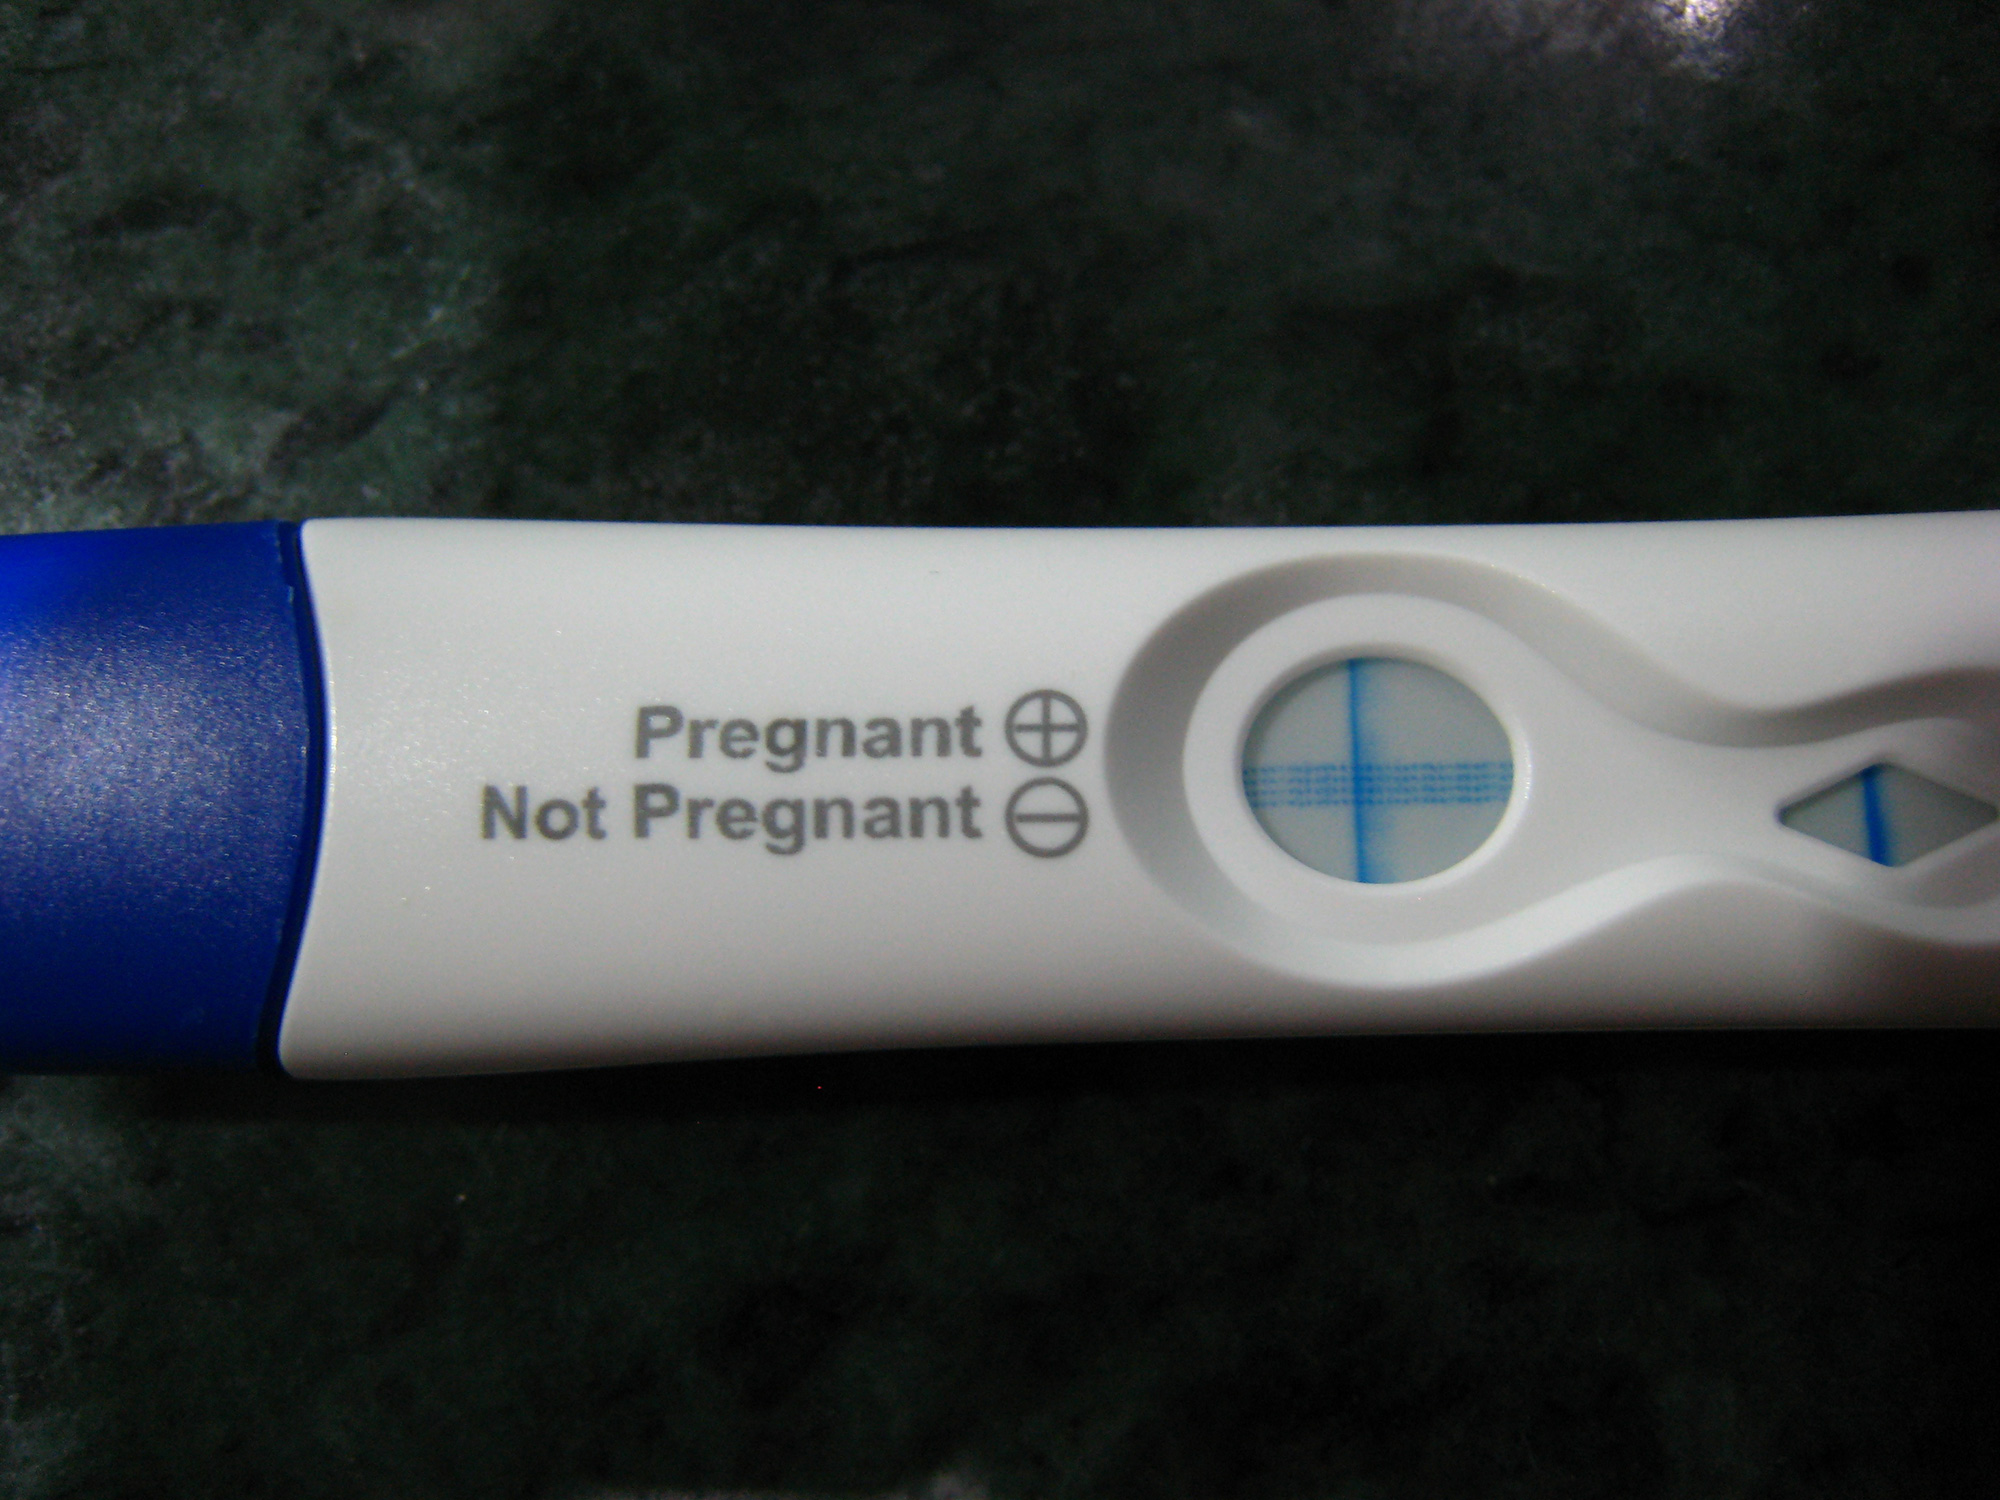 Am I Pregnant?